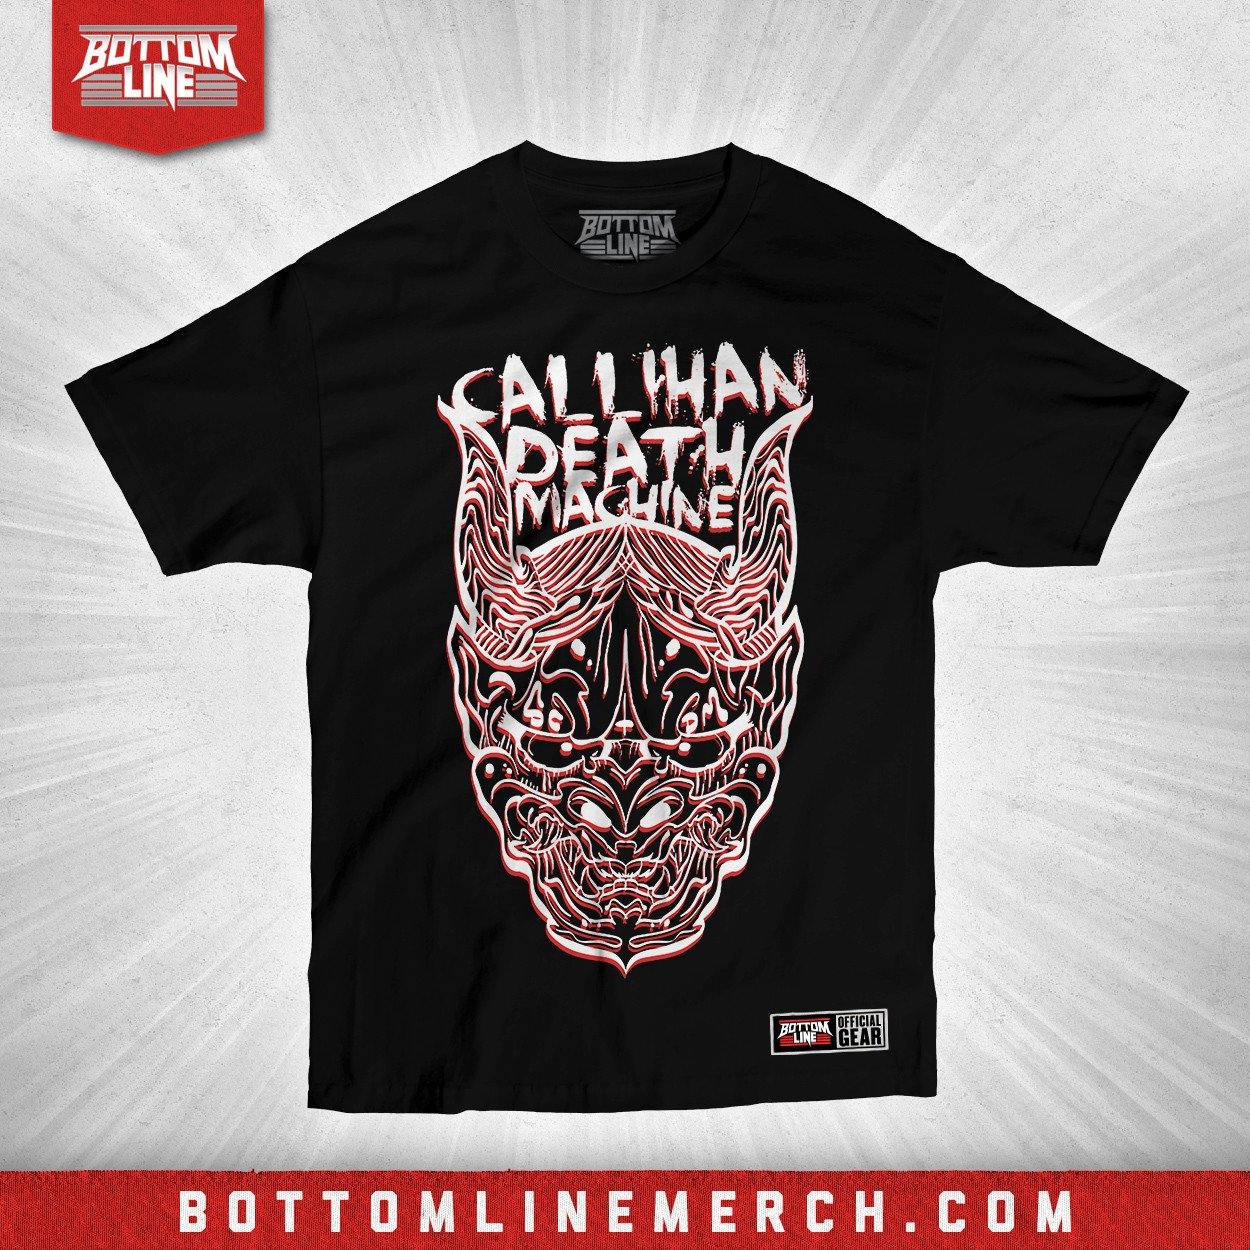 Buy Now – Sami Callihan "3D" Shirt – Wrestler & Wrestling Merch – Bottom Line